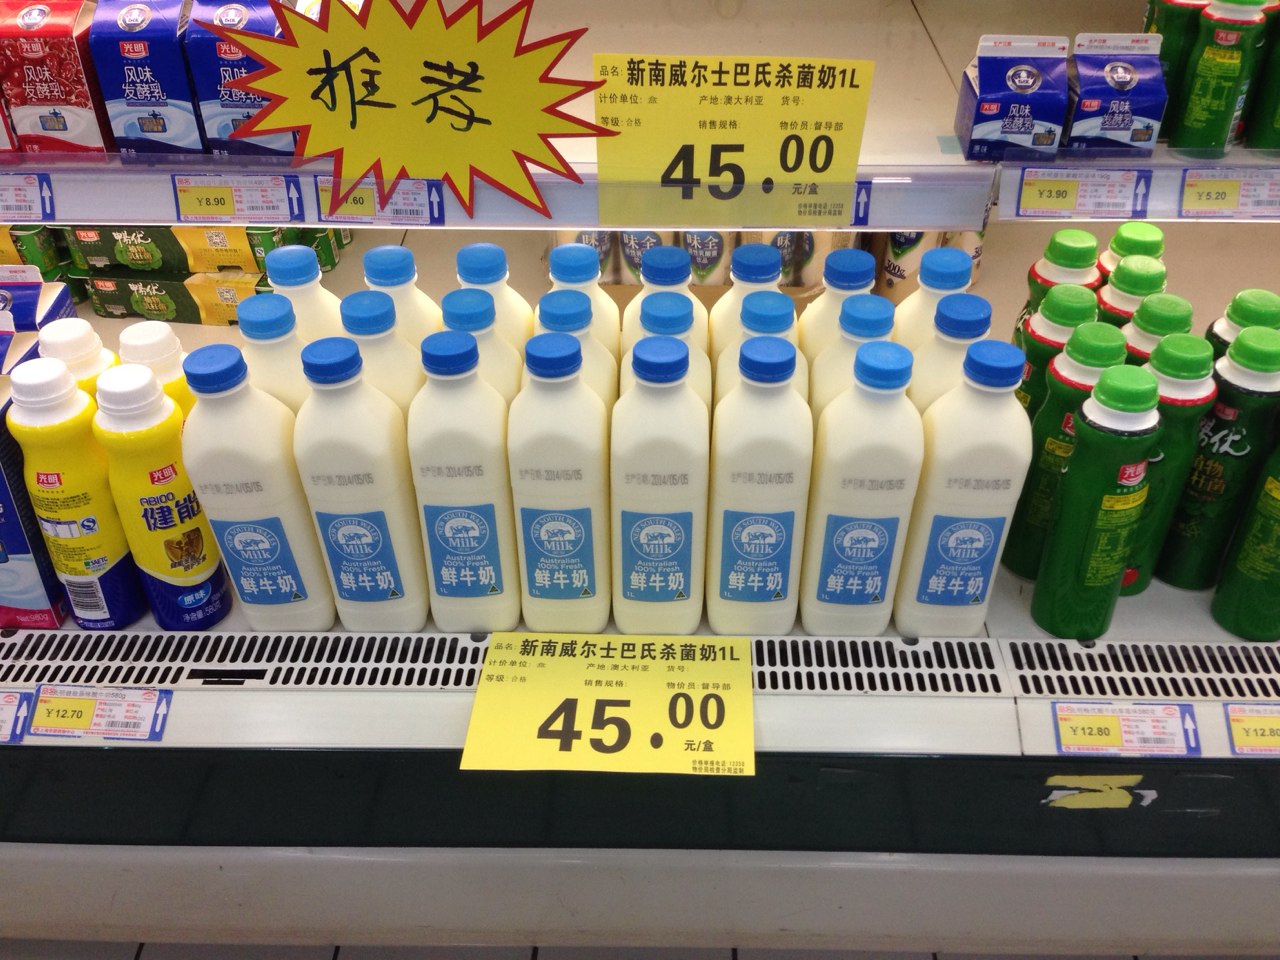 Las importaciones de lácteos en China volvieron a caer en mayo ’20